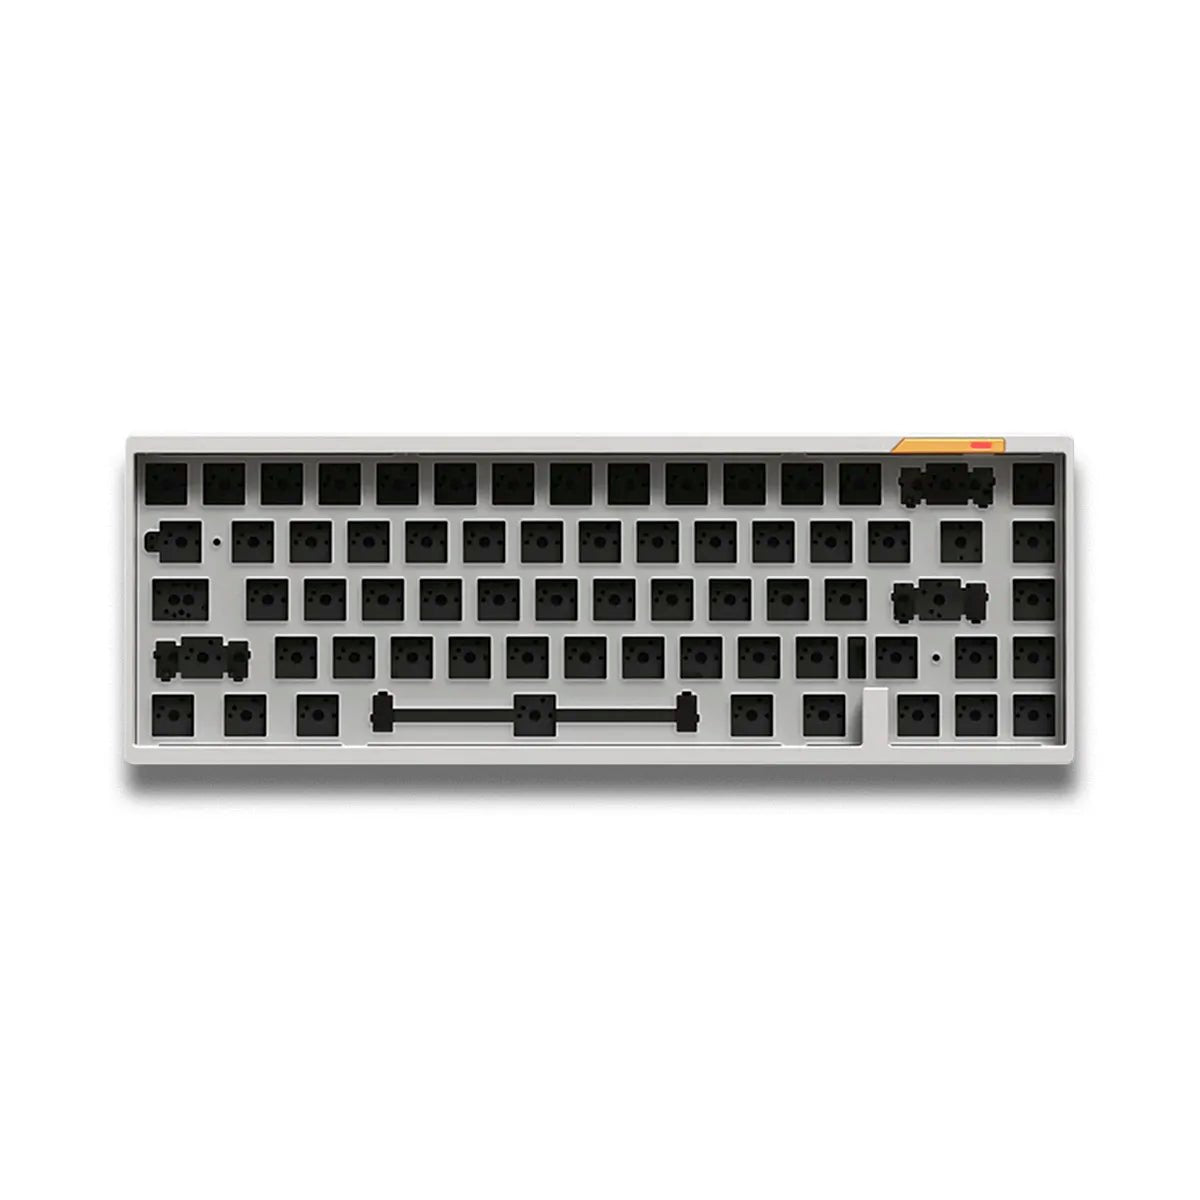 Luminkey65 65% Keyboard - Divinikey